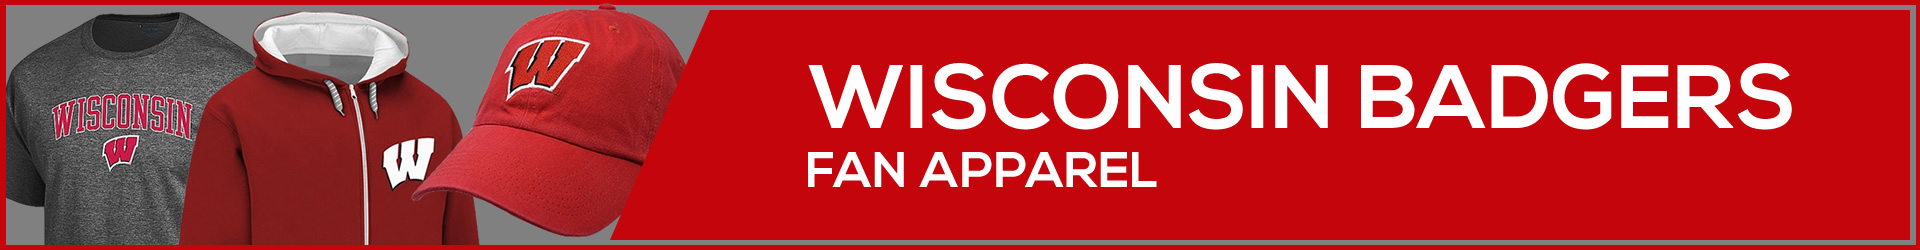 Wisconsin Badgers Apparel